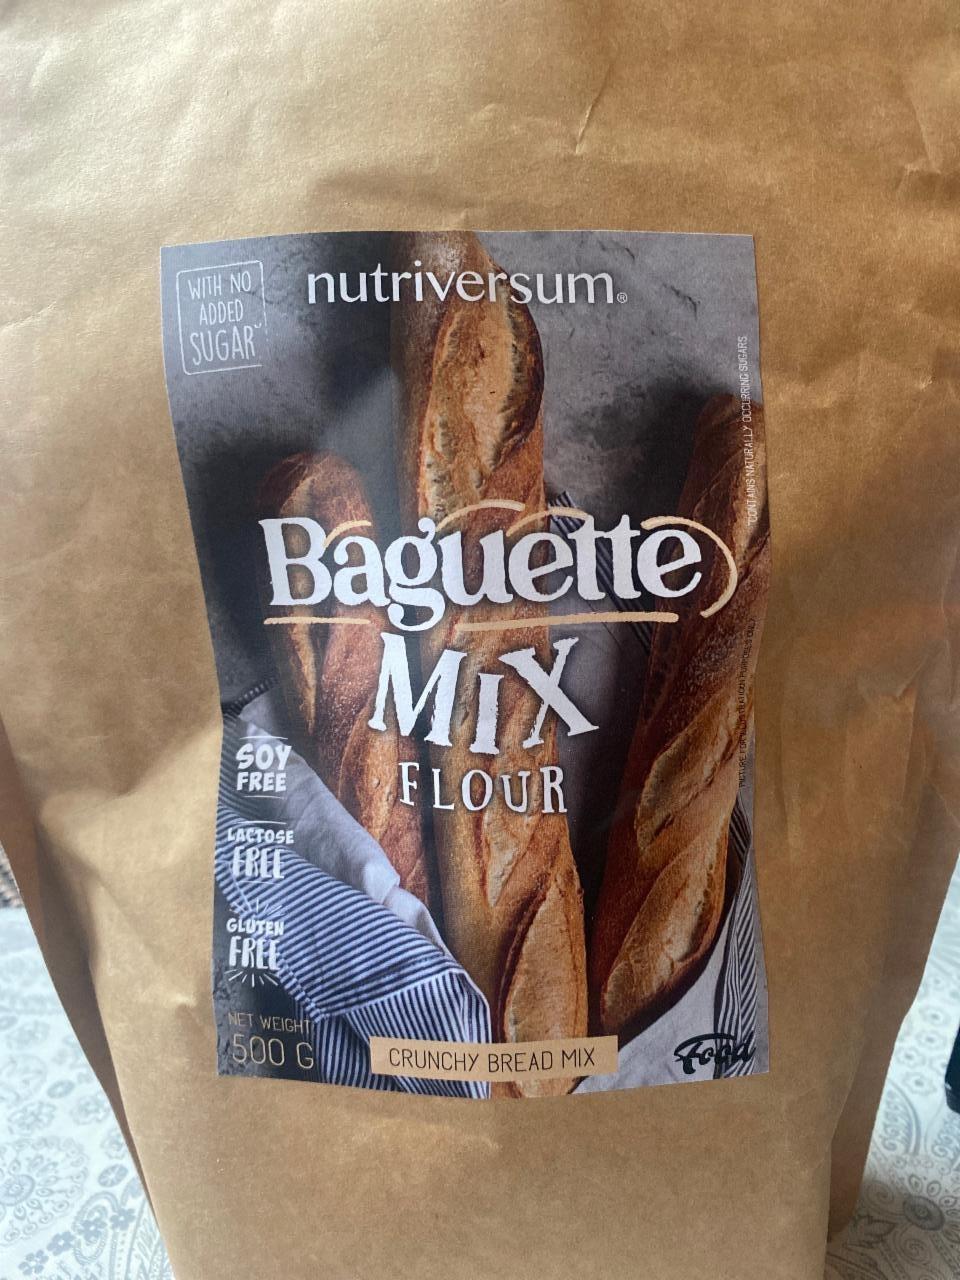 Képek - Baguette mix flour Nutriversum